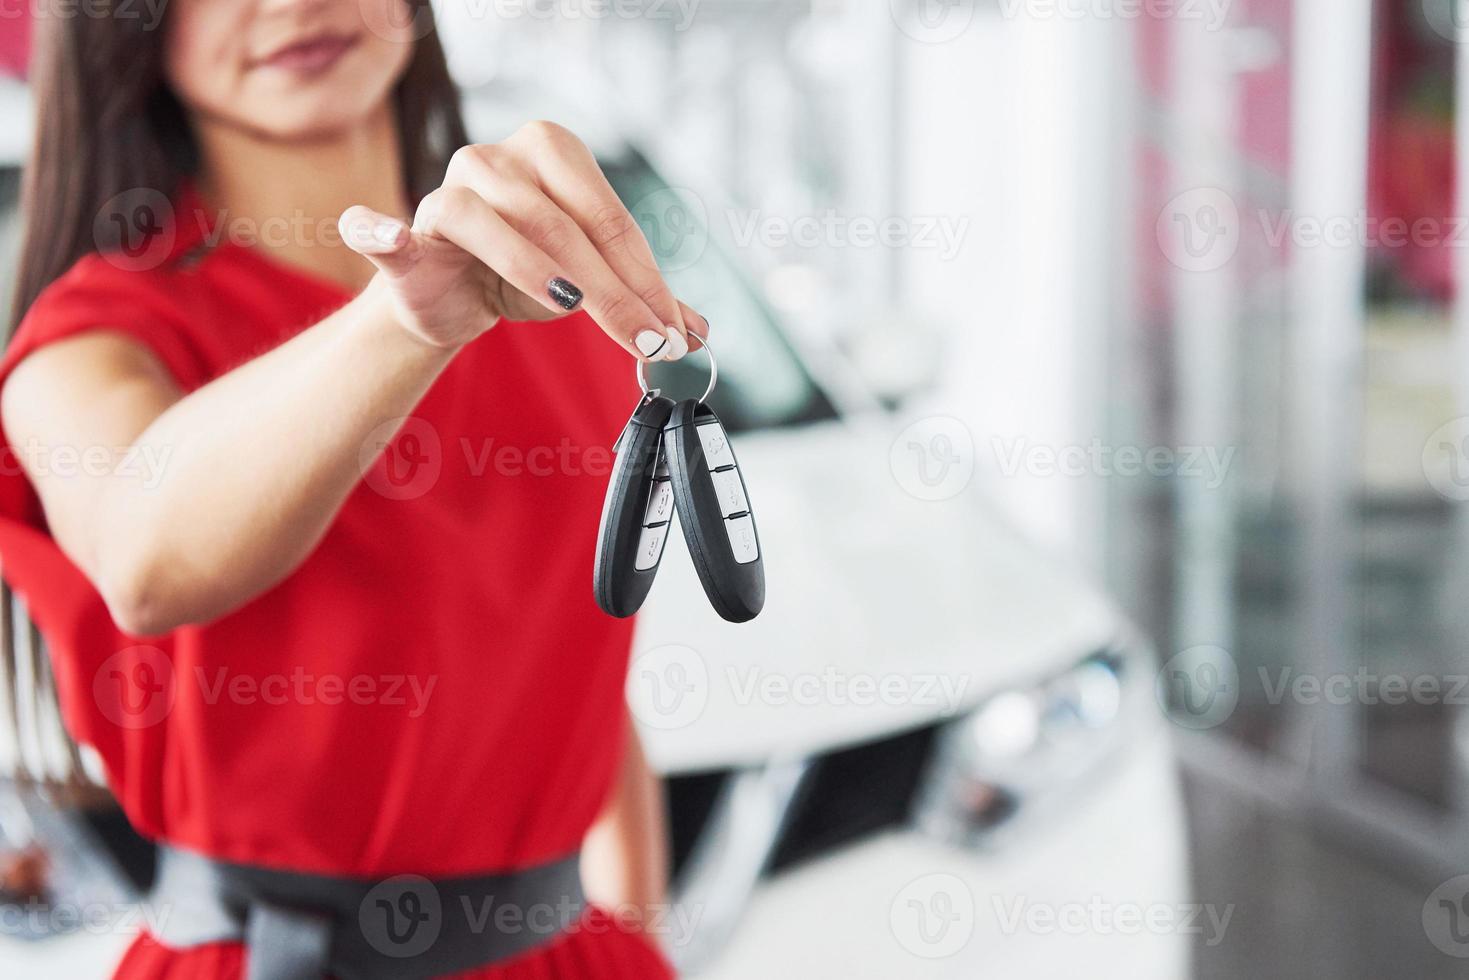 venditore di auto sorridente che consegna le chiavi della tua nuova auto, concessionaria e concetto di vendita. ragazza felice l'acquirente foto